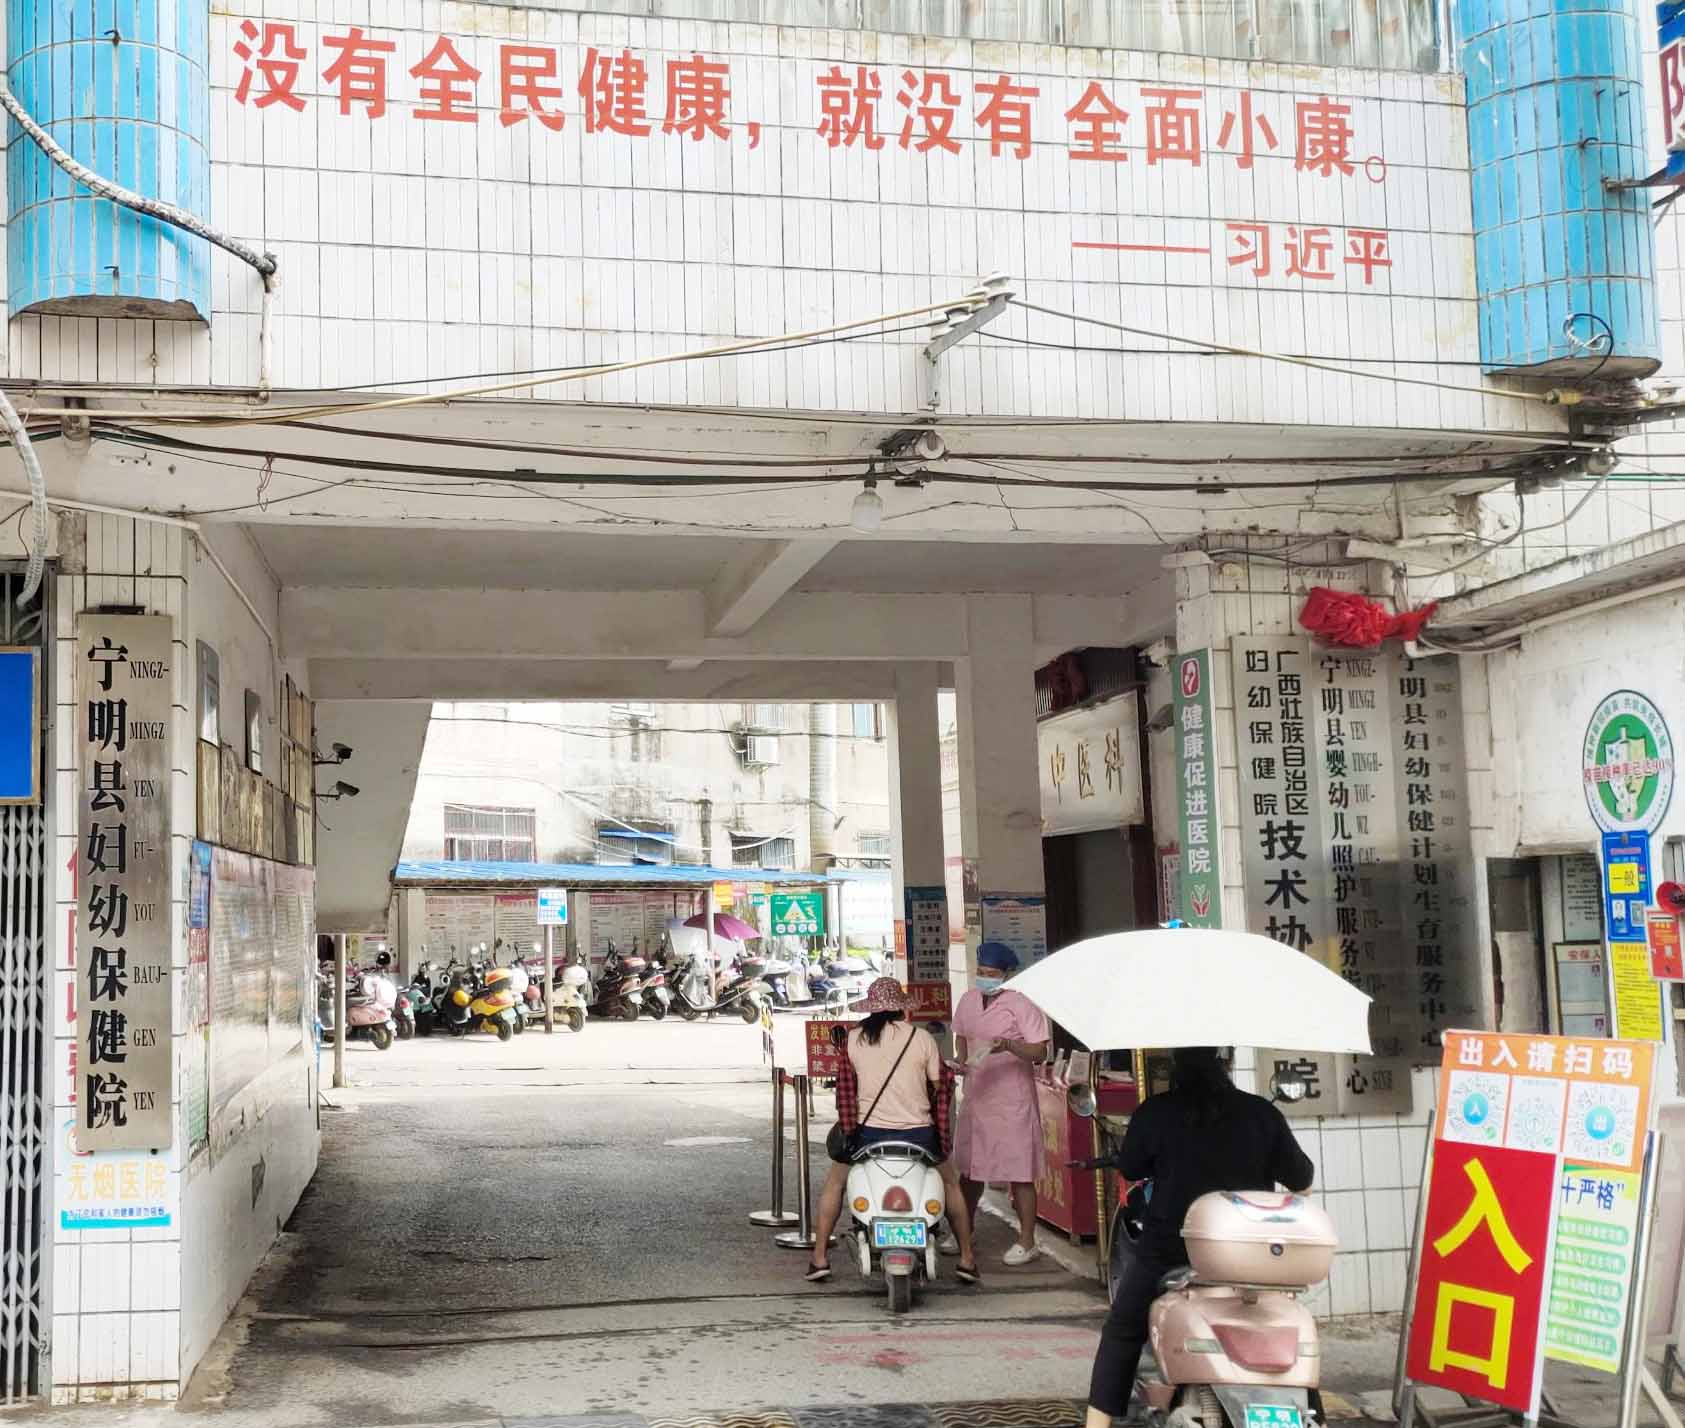 超声波太阳成集团tyc33455cc
在广西壮族自治区崇左市宁明县妇幼保健院装机